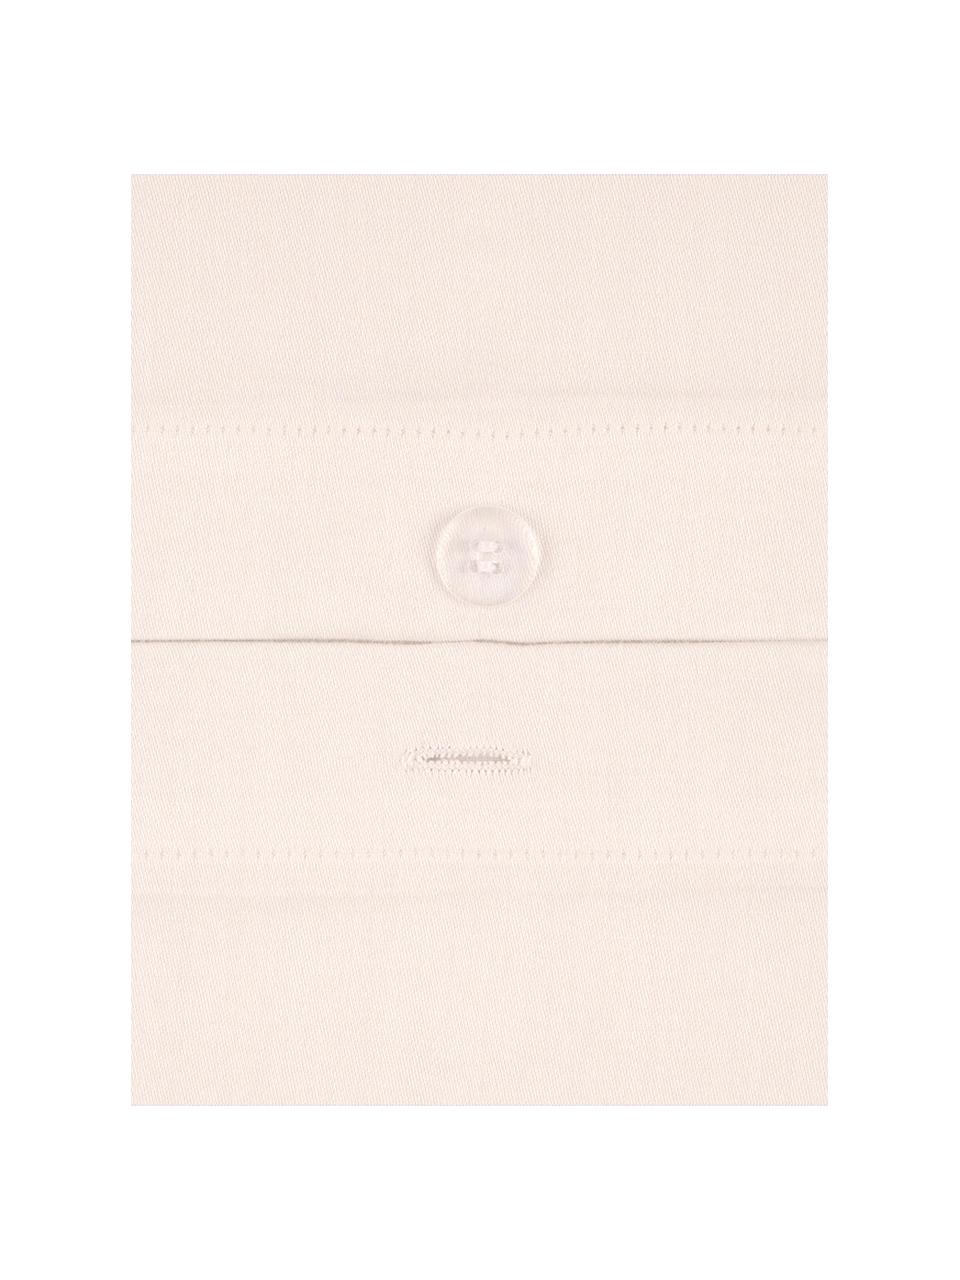 Růžové povlečení z bavlněného saténu Comfort, Krémově bílá, 240 x 220 cm + 2 polštáře 80 x 80 cm